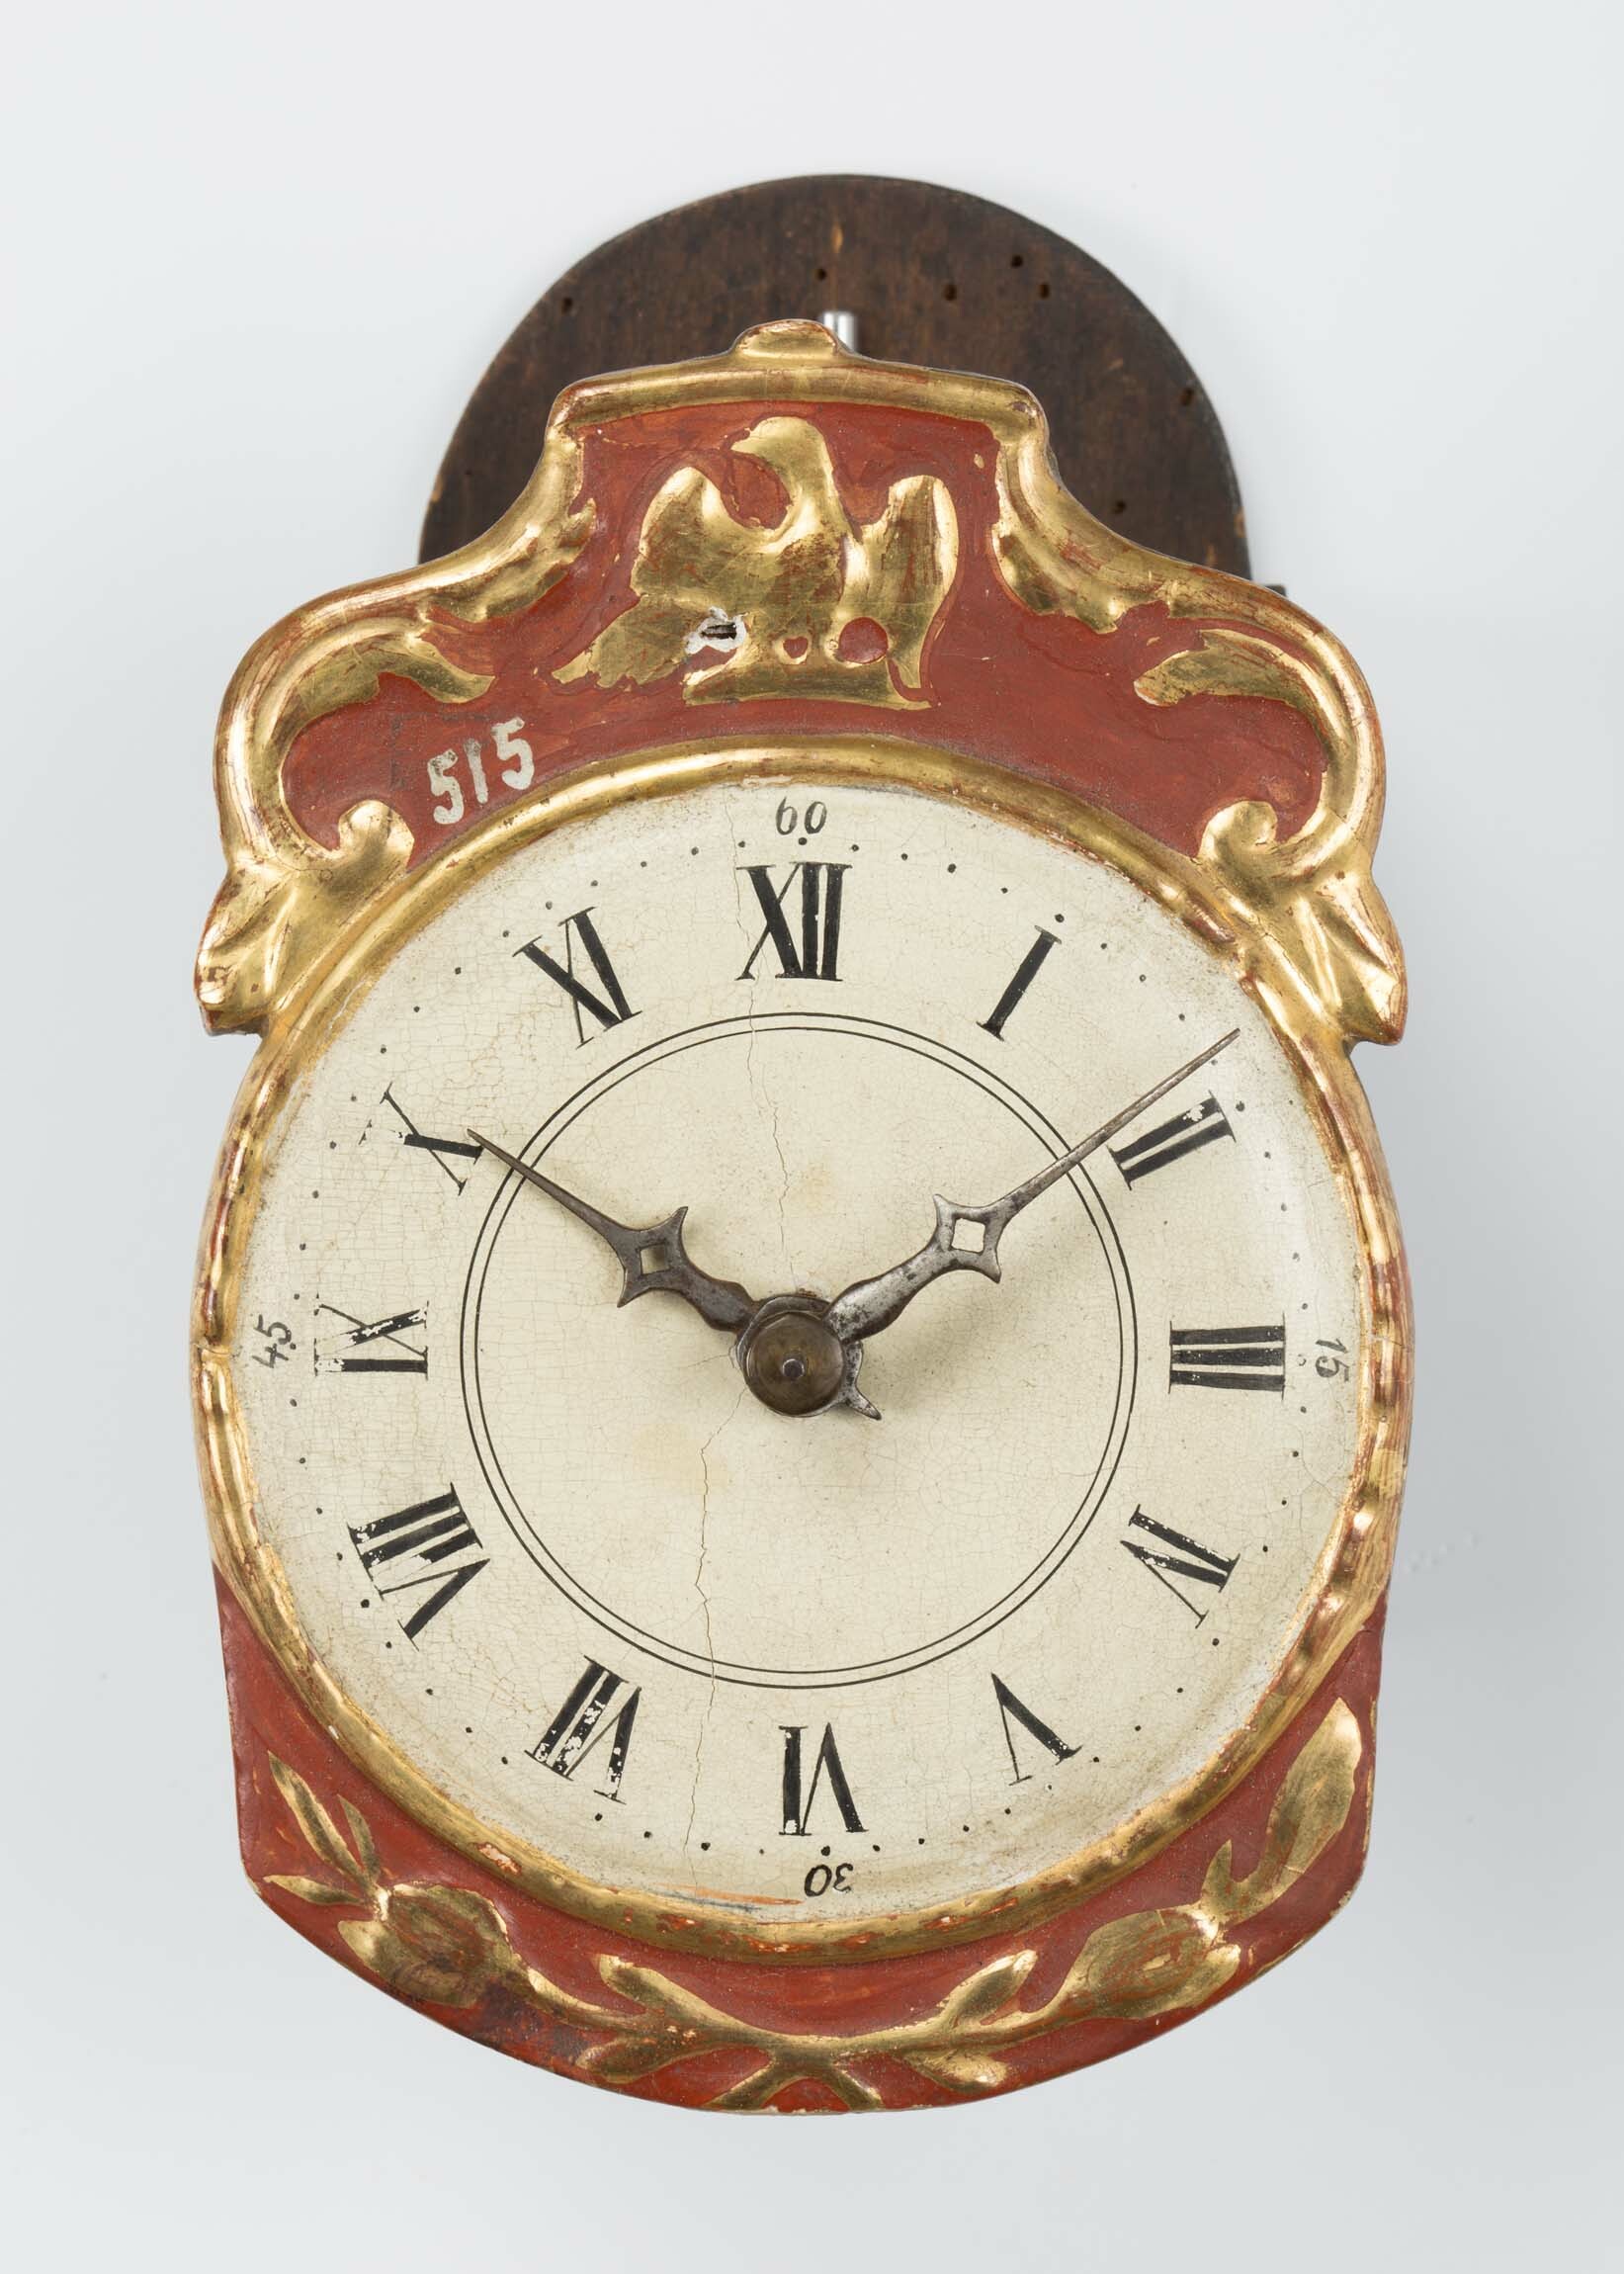 Schottenuhr, Dominikus Singler, Gütenbach, 1879 (Deutsches Uhrenmuseum CC BY-SA)